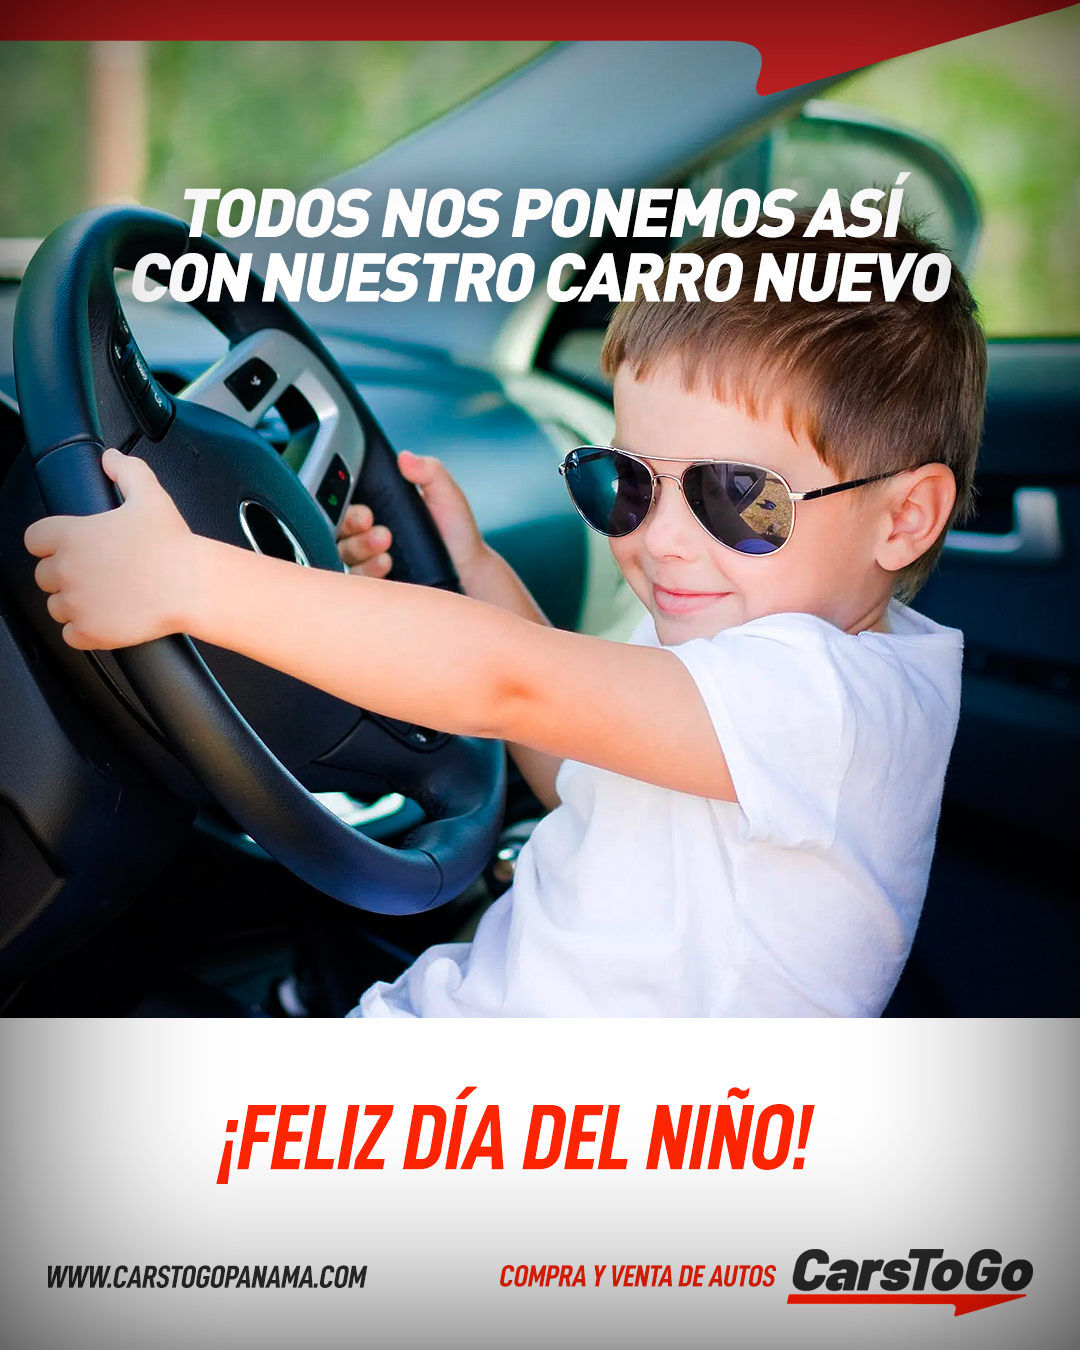 CarsToGoPanama on Twitter: "Vuelve a recordar la felicidad de tener juguete nuevo. Feliz Día del Contáctanos: WhatsApp: (507) 6991-1111 Teléfono: 204-9536 https://t.co/4nUDrgJFBm #DíaDelNiño #DíaDelNiñoPanama #DíaDelNiñoPTY#CarsToGoPanama ...